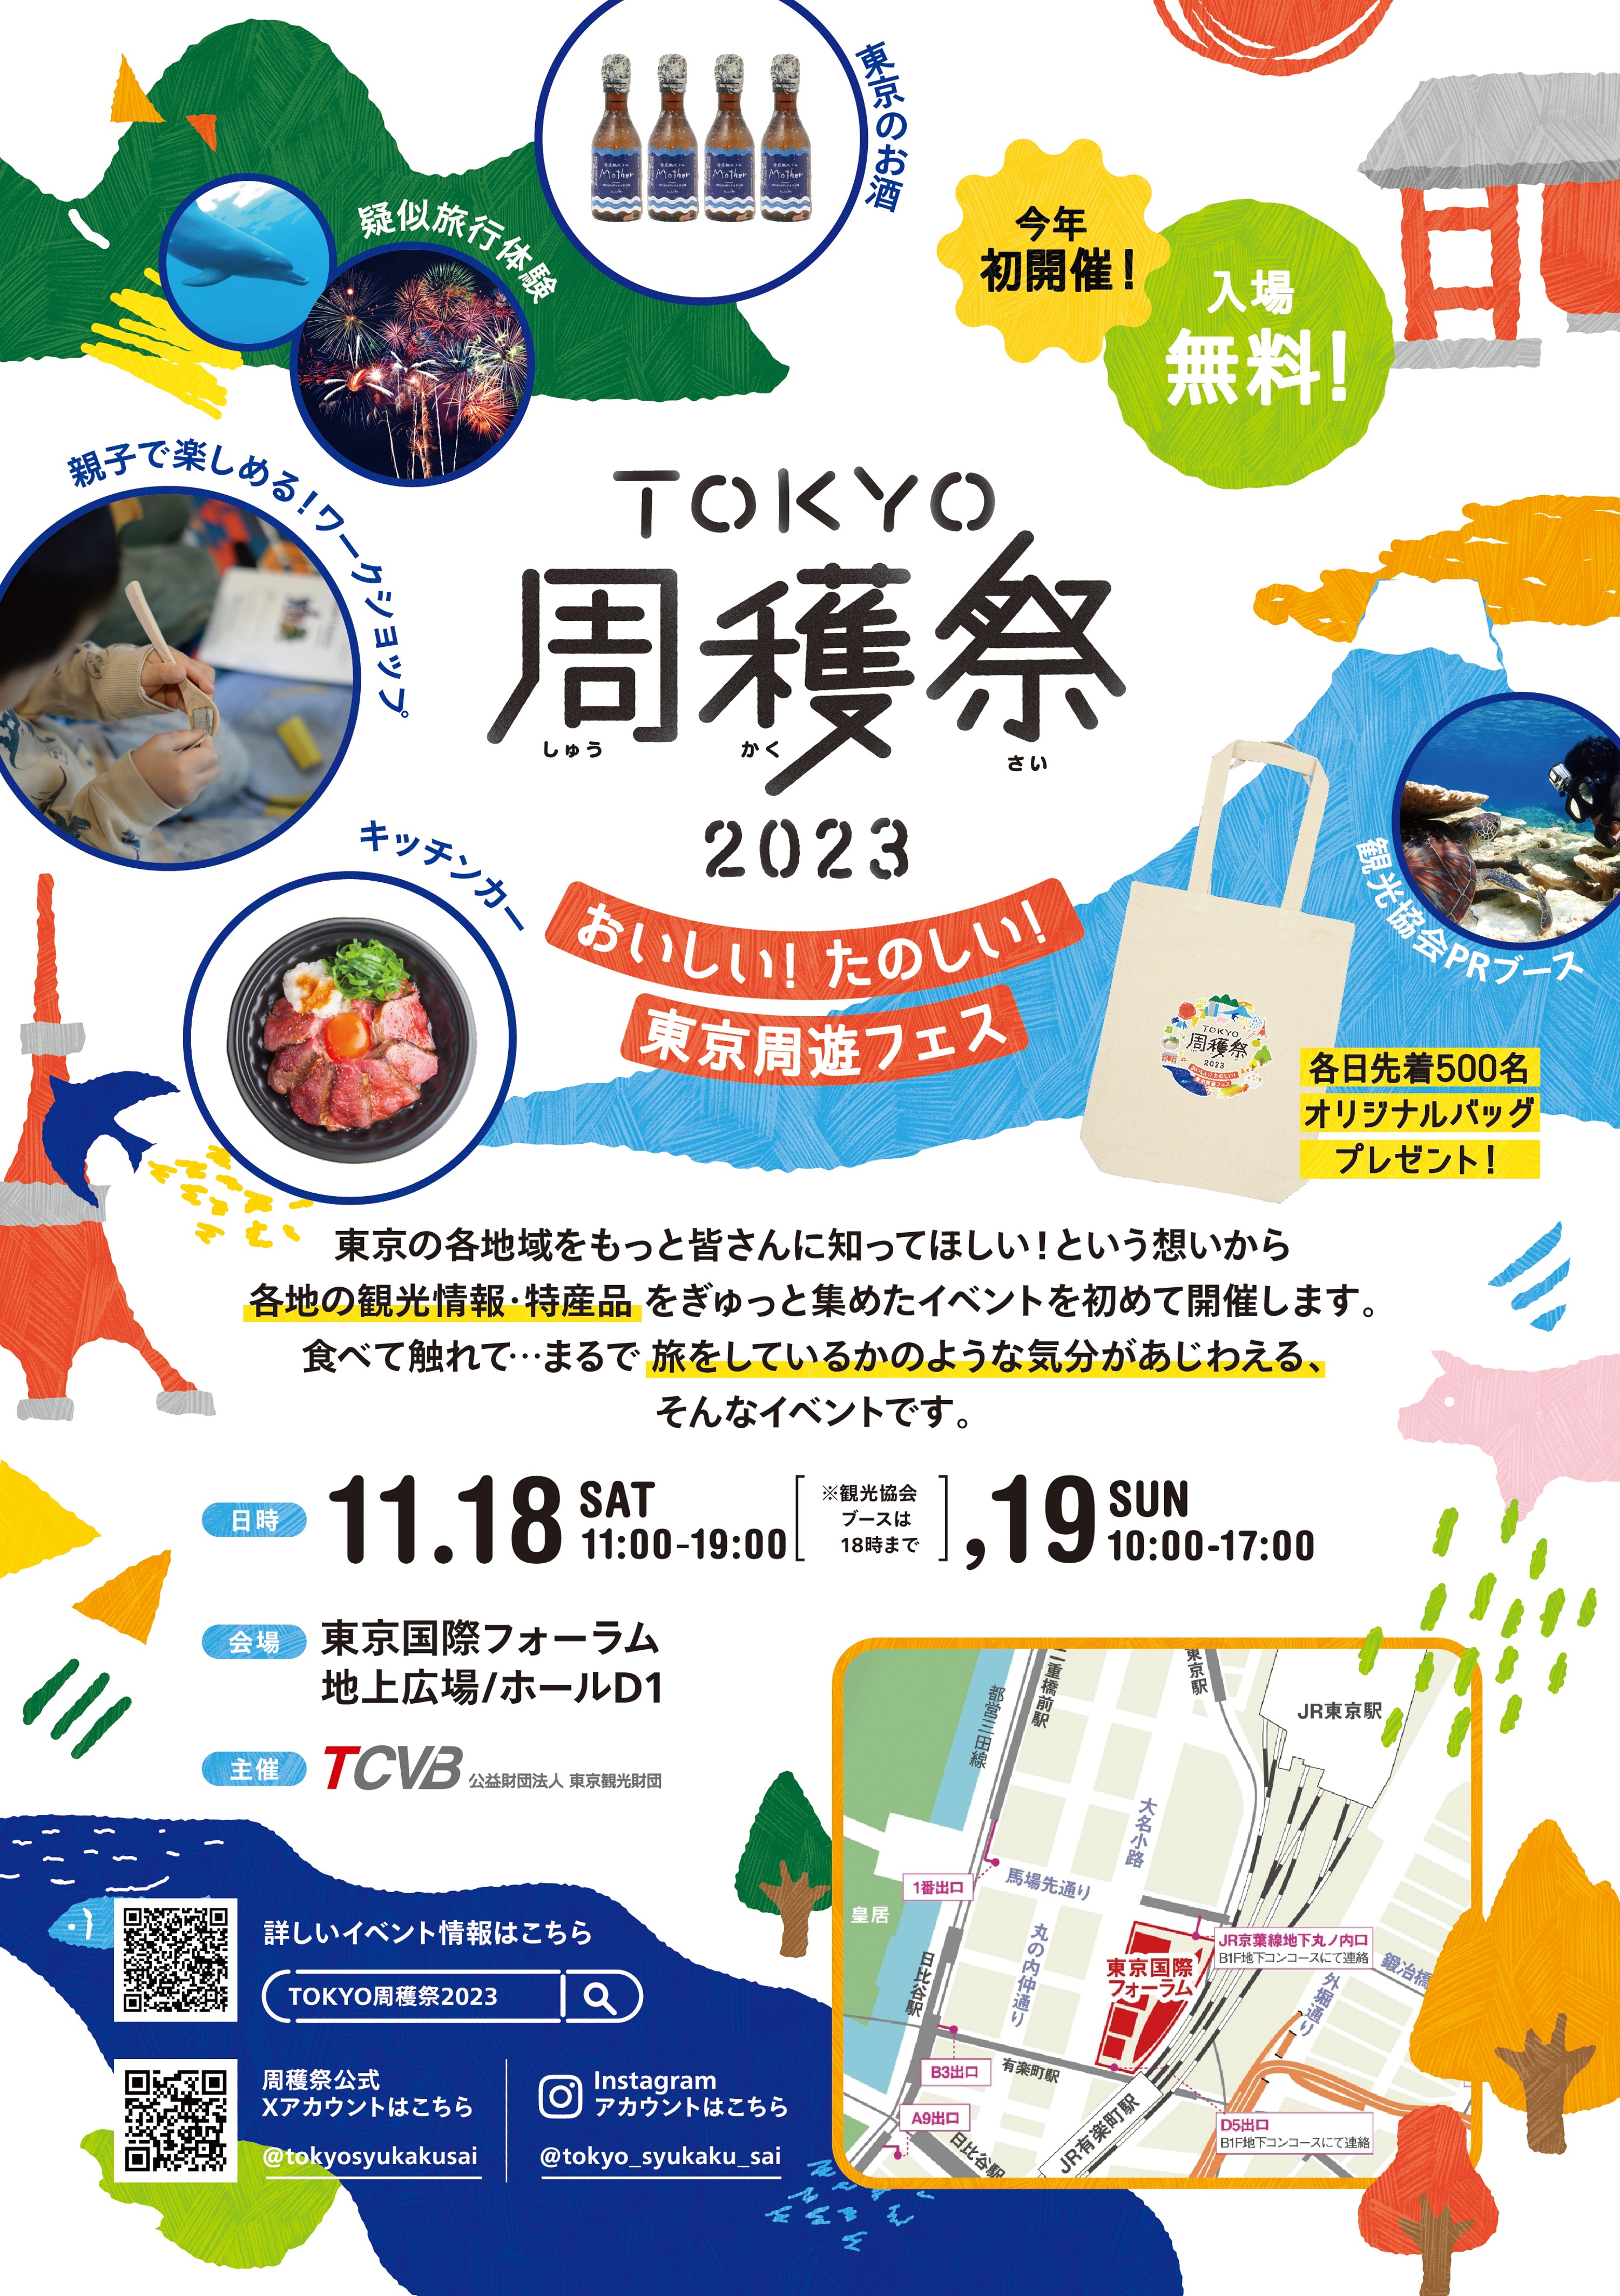 TOKYO周穫祭2023チラシ表